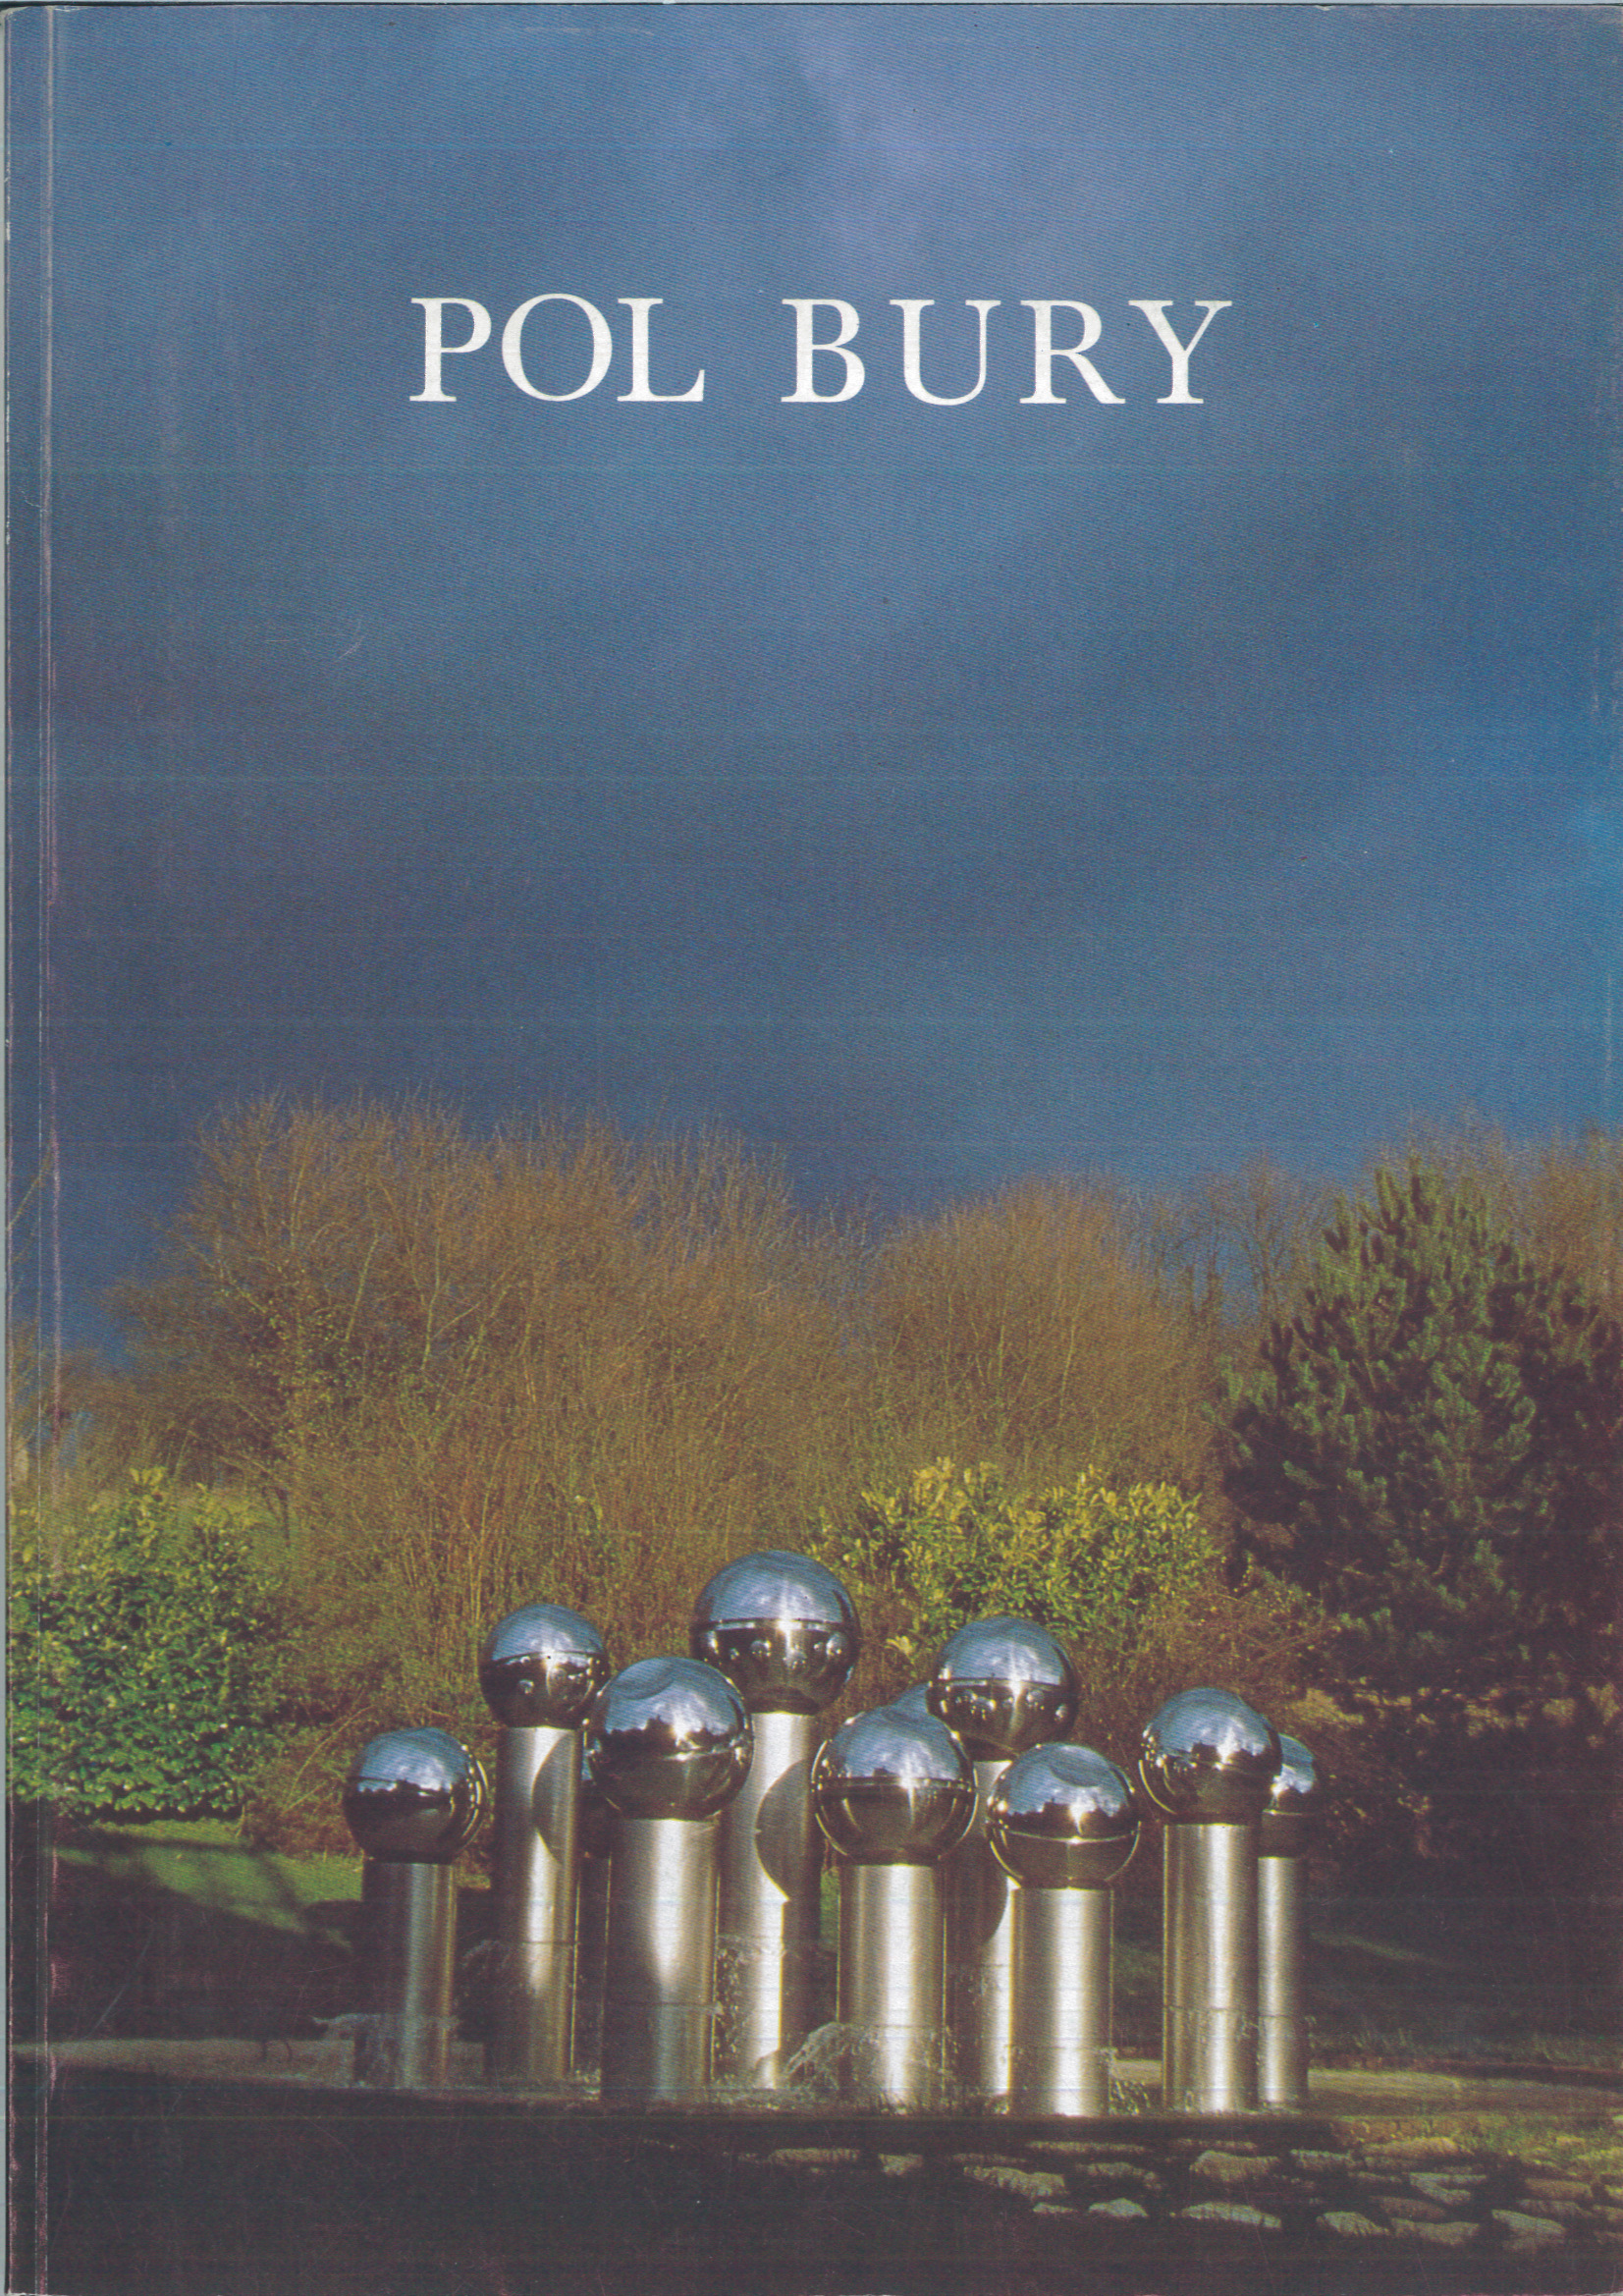 15-2-Pol-Bury-Sculpture-1959-1985-Cinetisations-1962-1988-Dessins-Paris-Galerie-de-poche-Galerie-1900-2000-1988